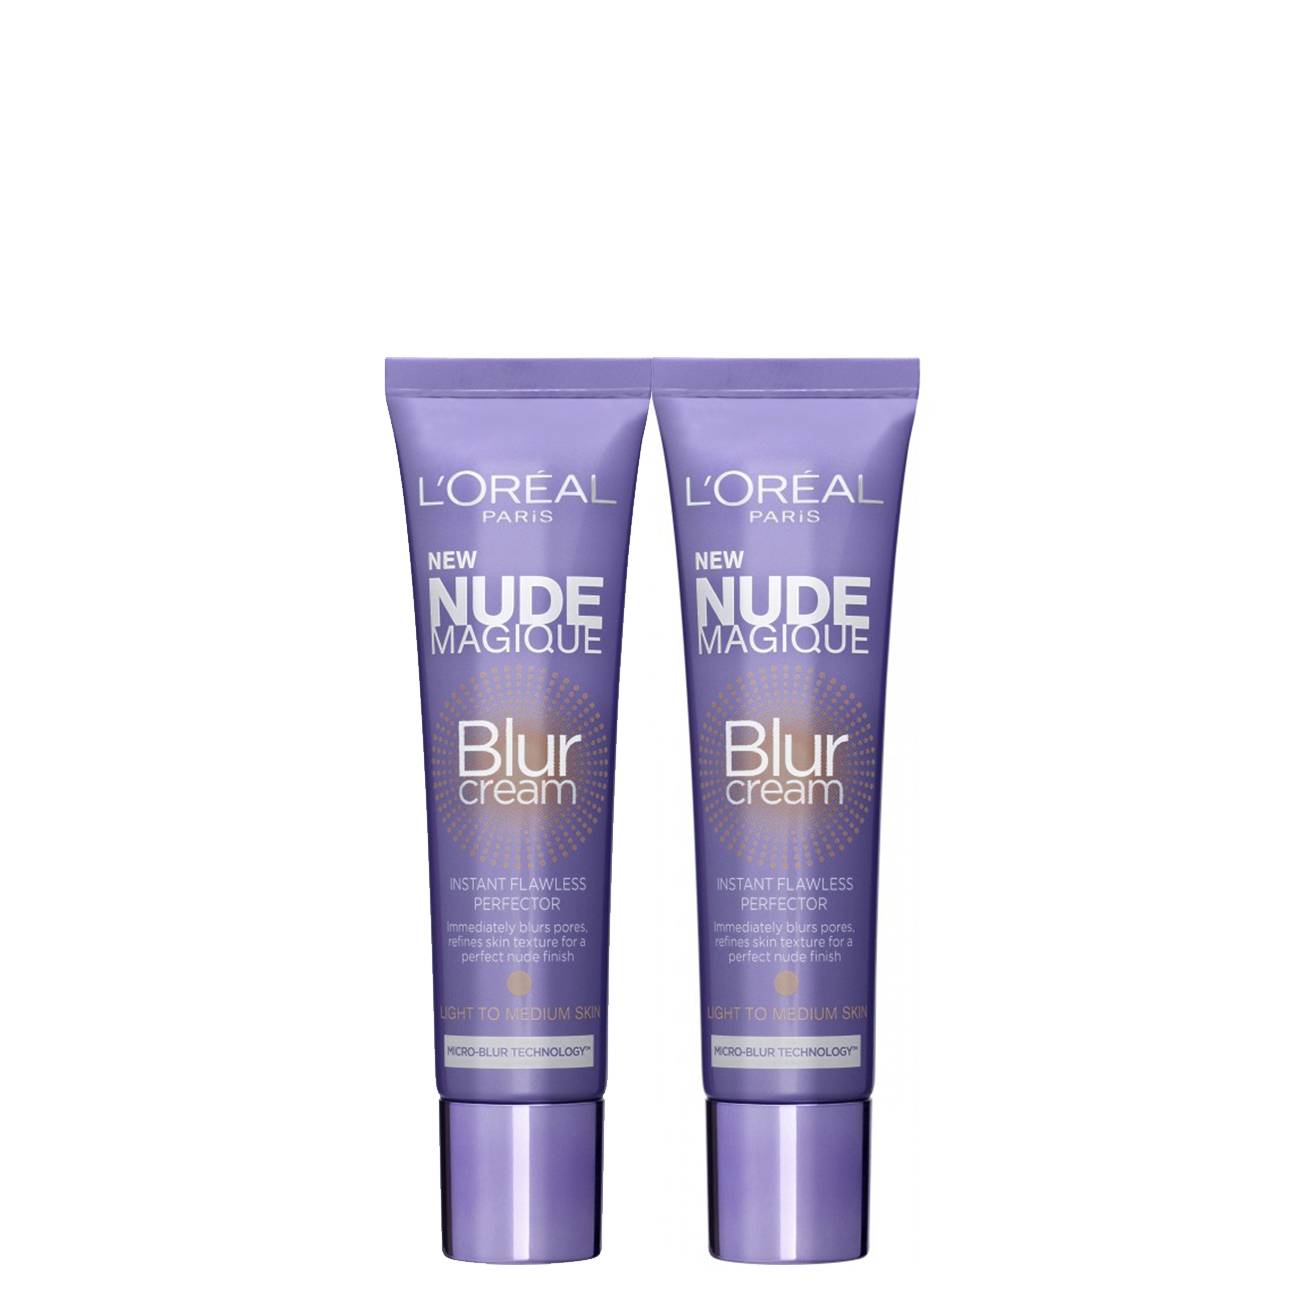 Nude Magique Blur Cream 50 G L'Oreal imagine 2021 bestvalue.eu